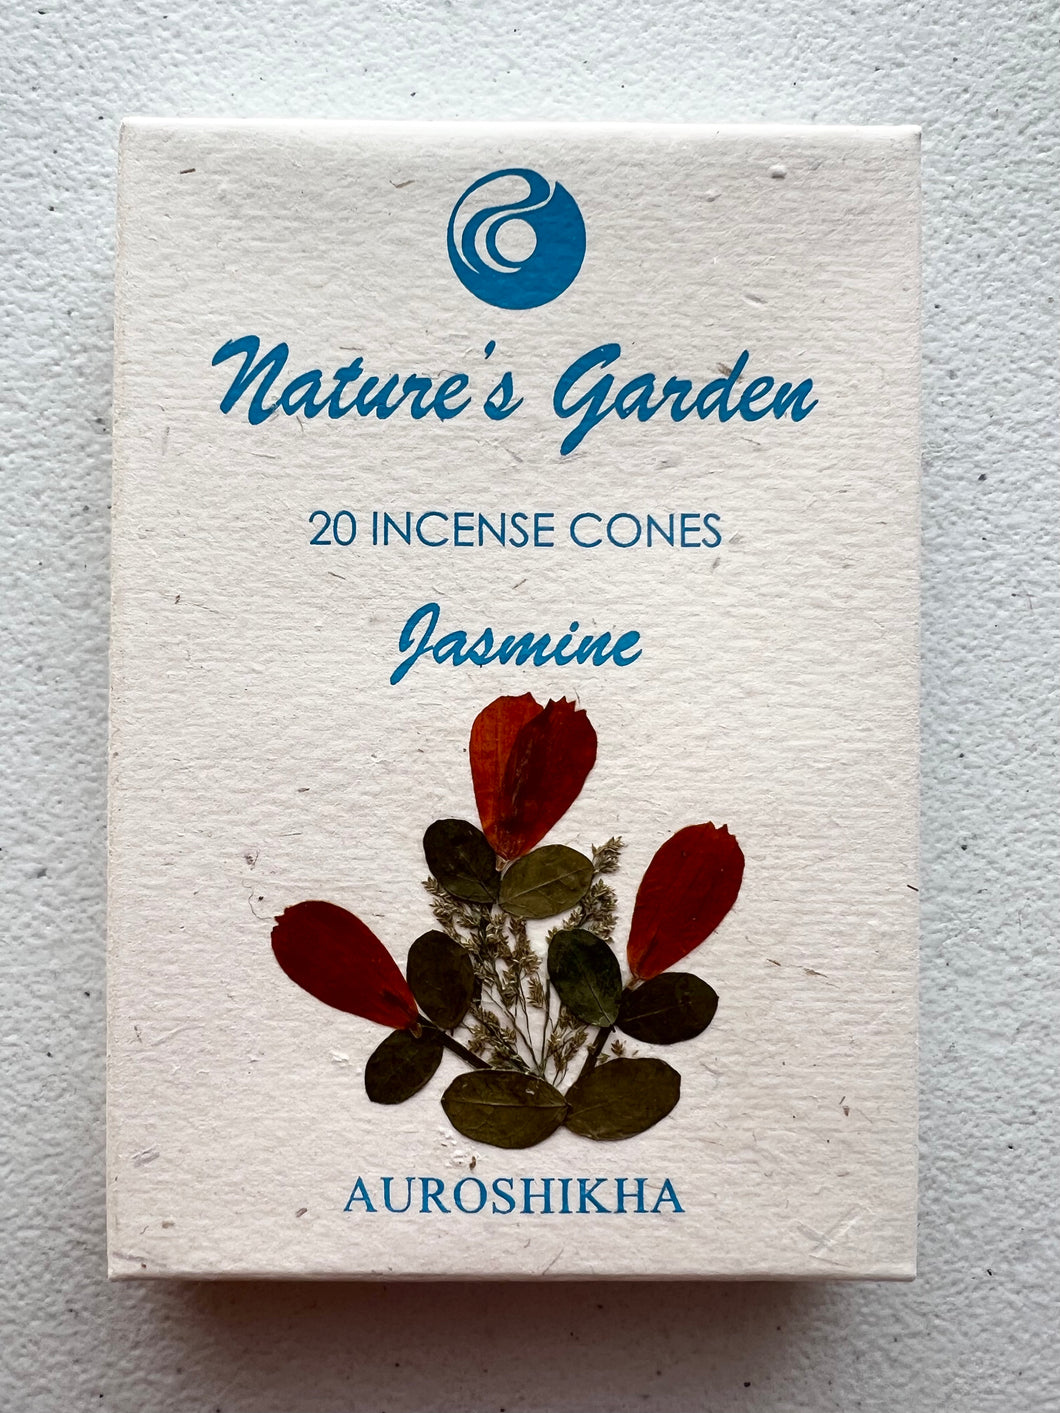 Nature's Garden Cones, various scents